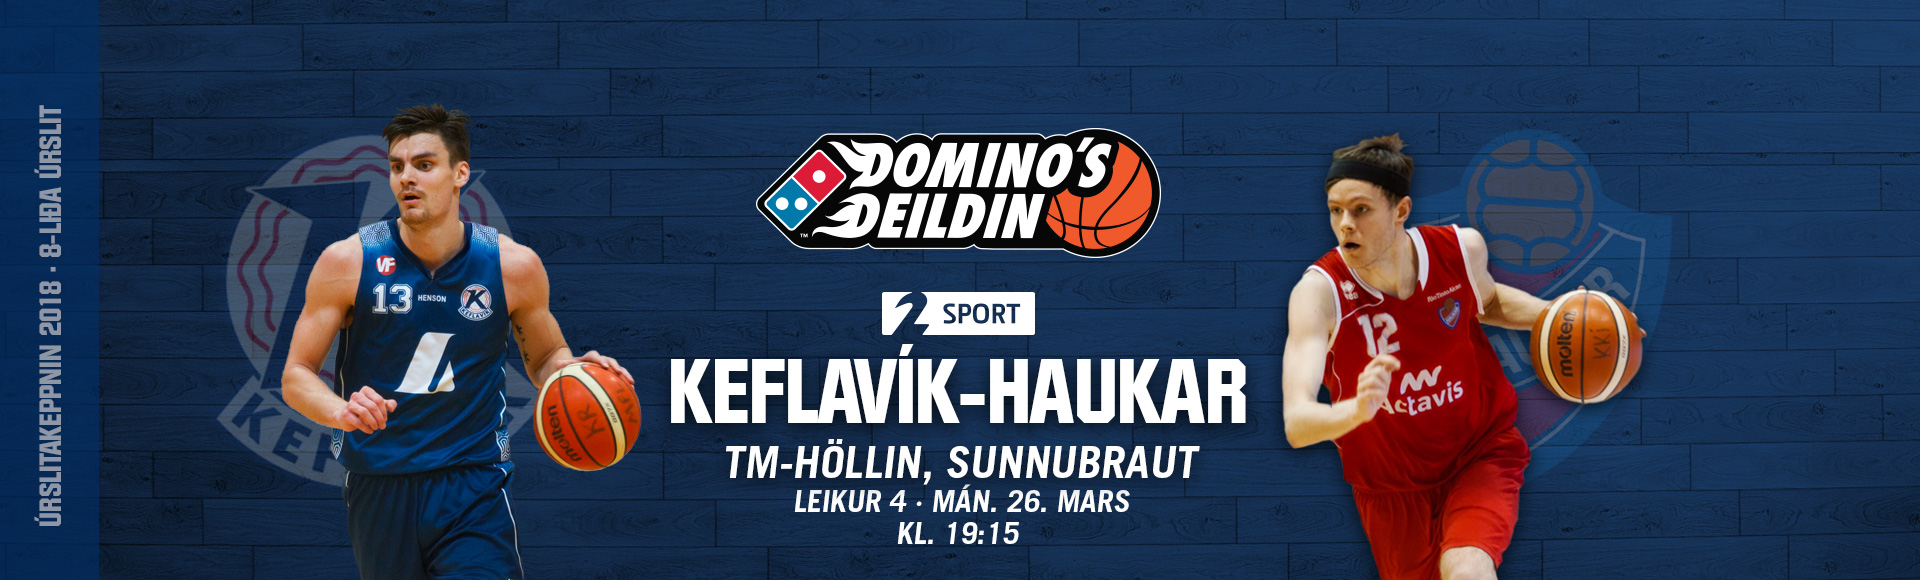 Domino's deild karla í kvöld: Keflavík-Haukar · Leikur 4